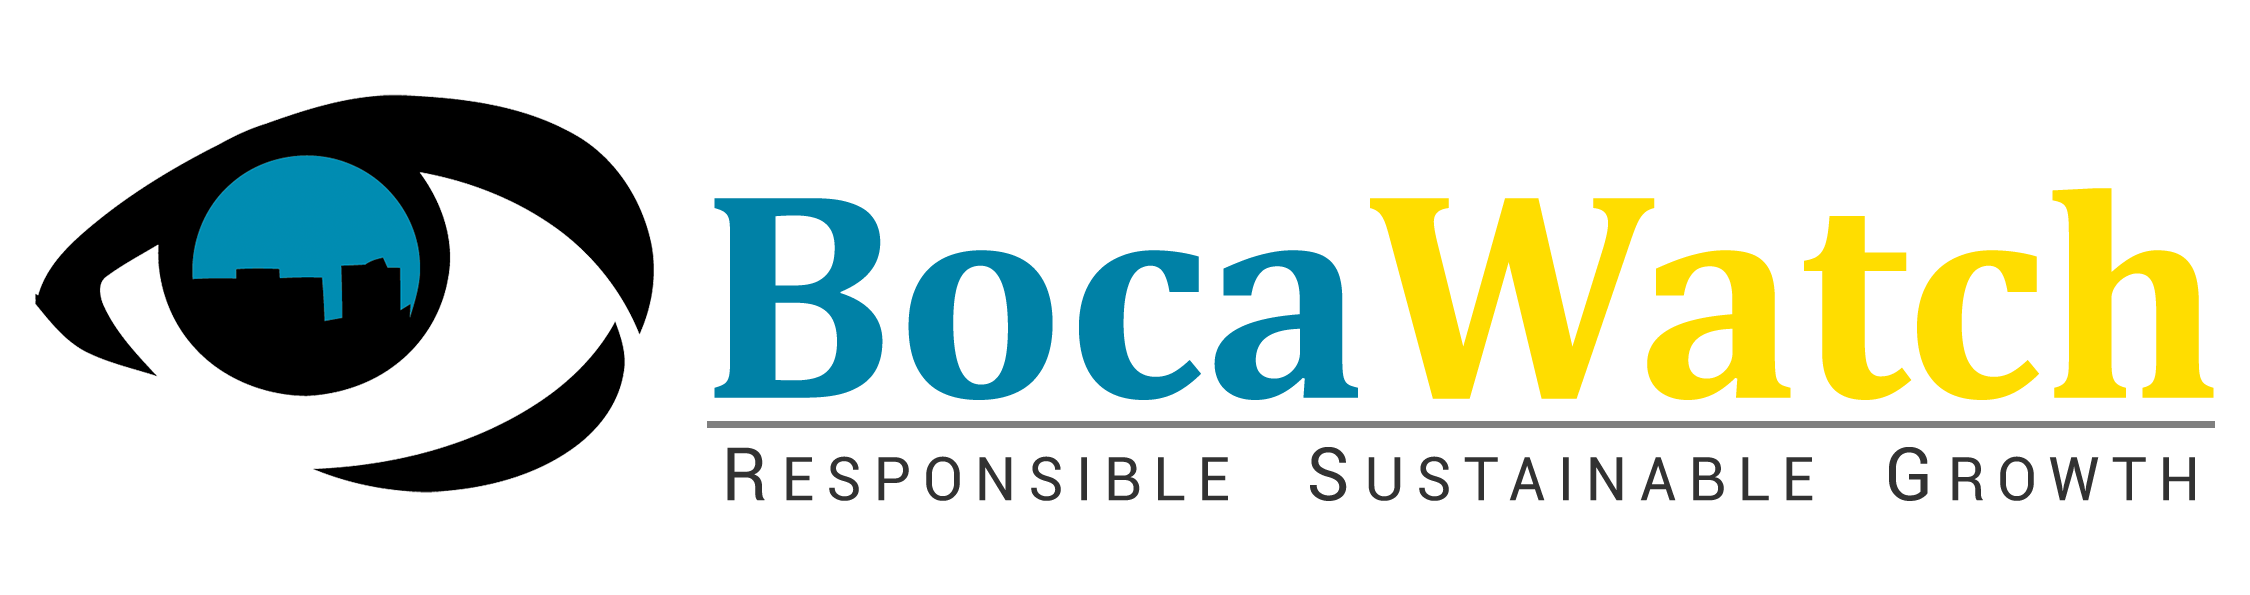 Boca Watch - Official logo